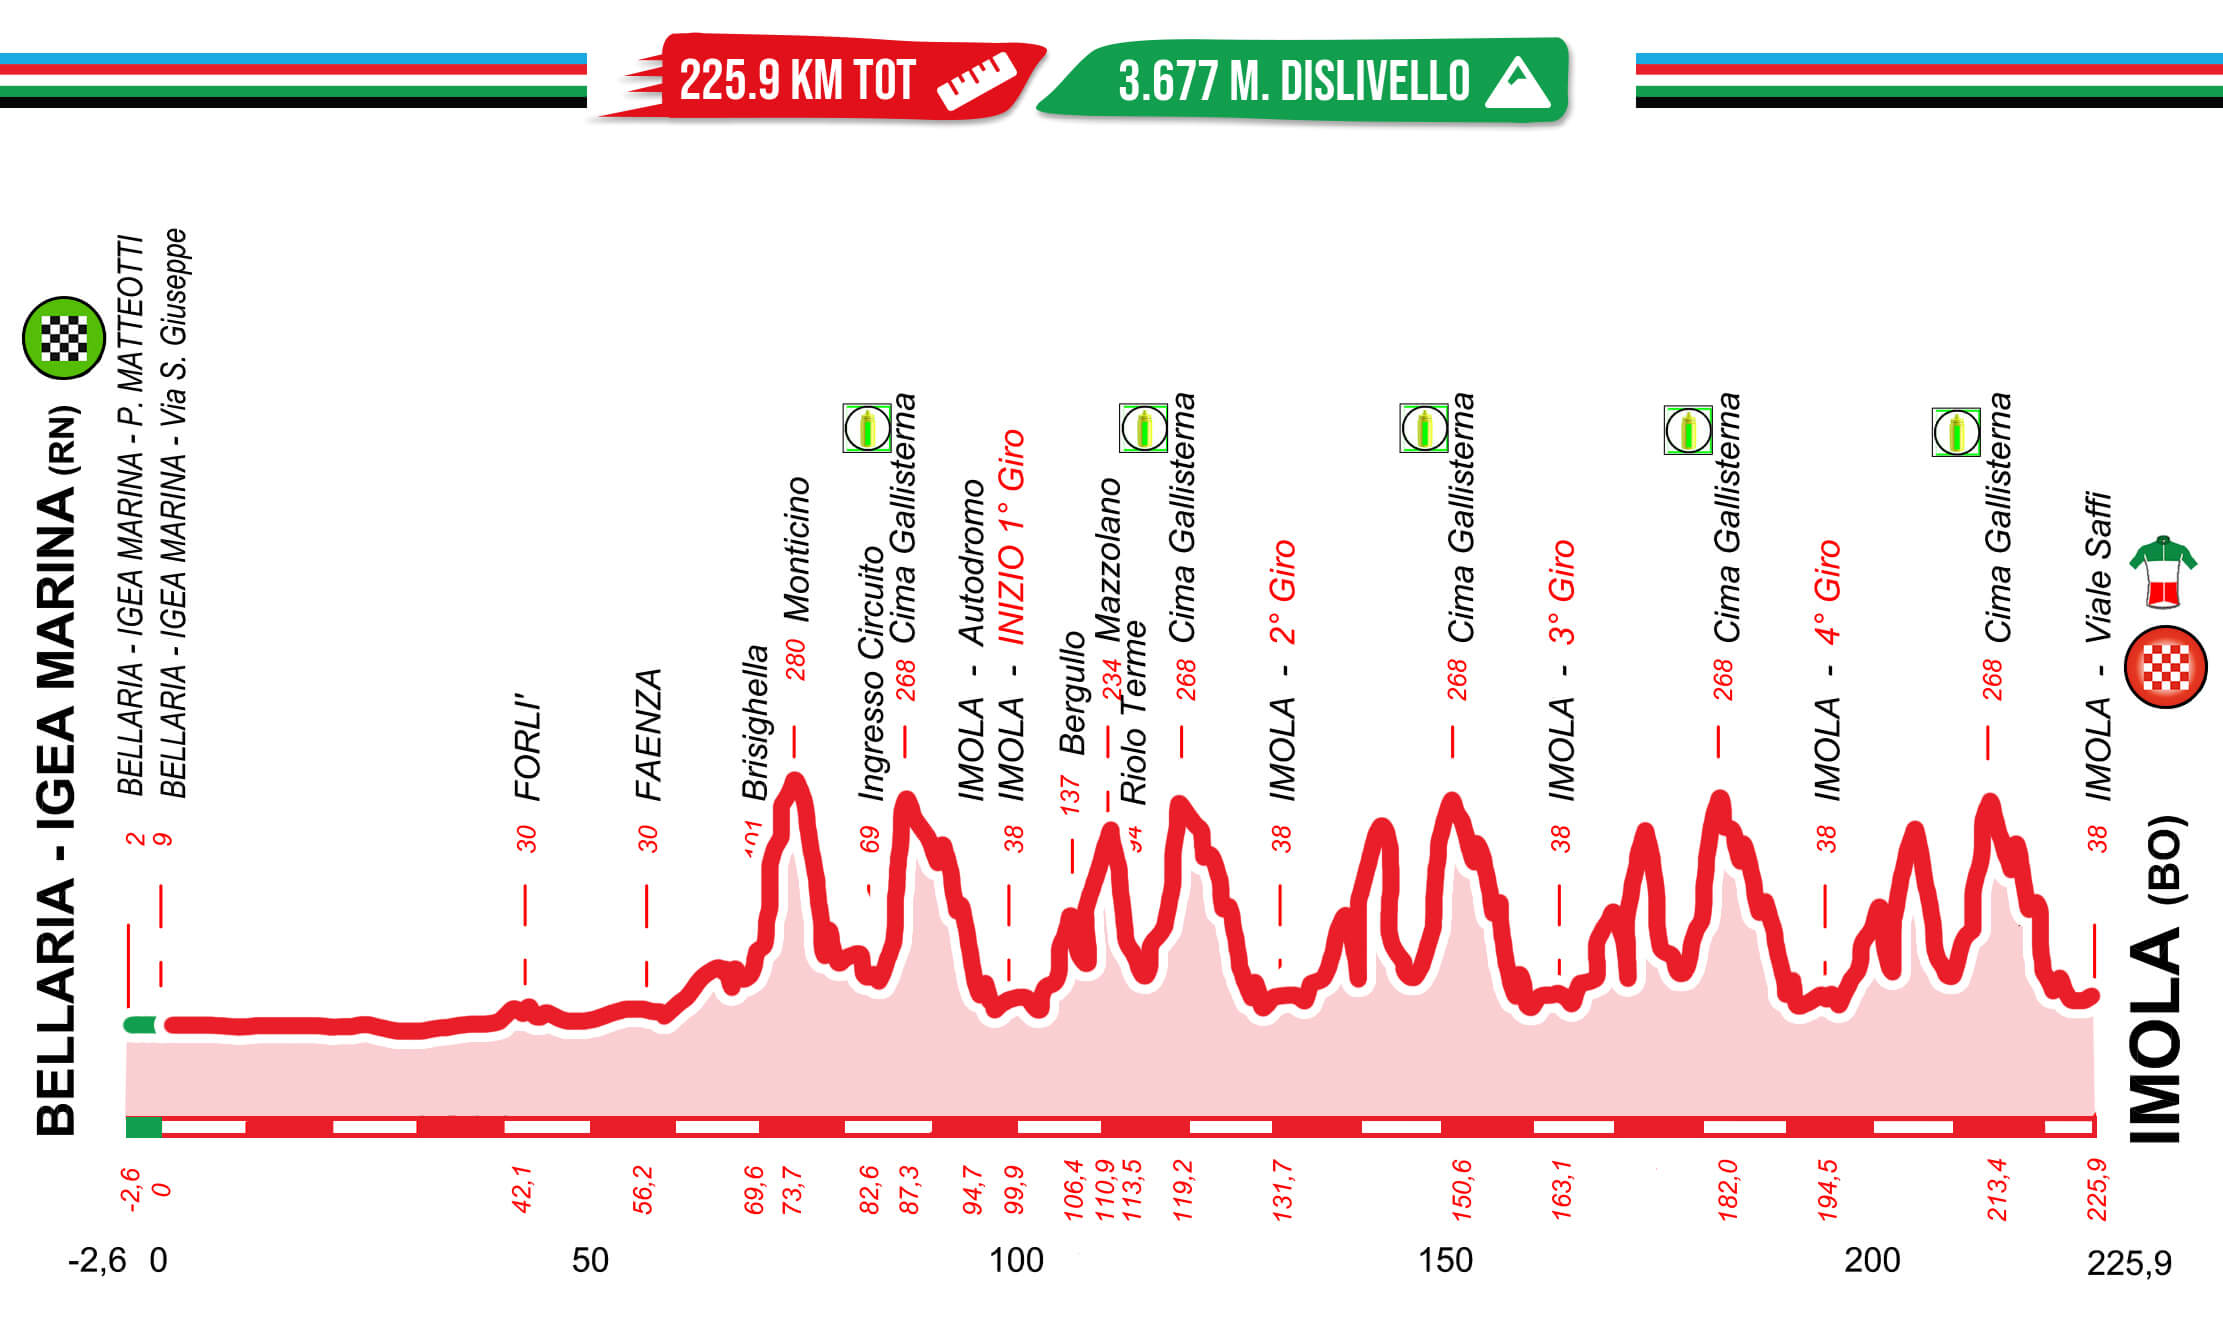 Campionati italiani di ciclismo 2021 - Percorso prova in linea maschile